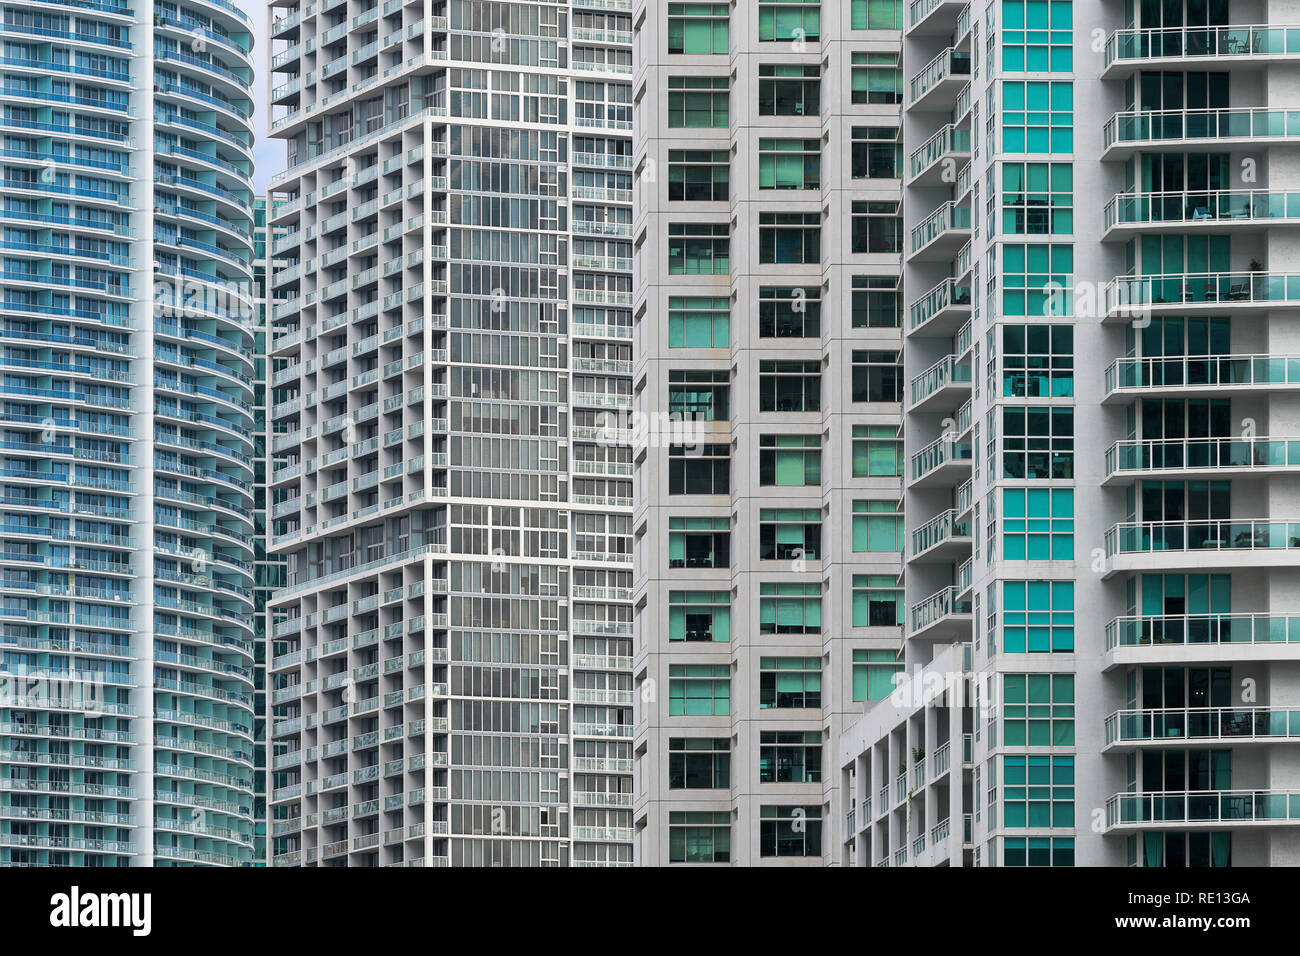 Résumé de l'architecture des bâtiments le long de l'avenue Brickell dans le centre-ville de Miami, Floride Banque D'Images